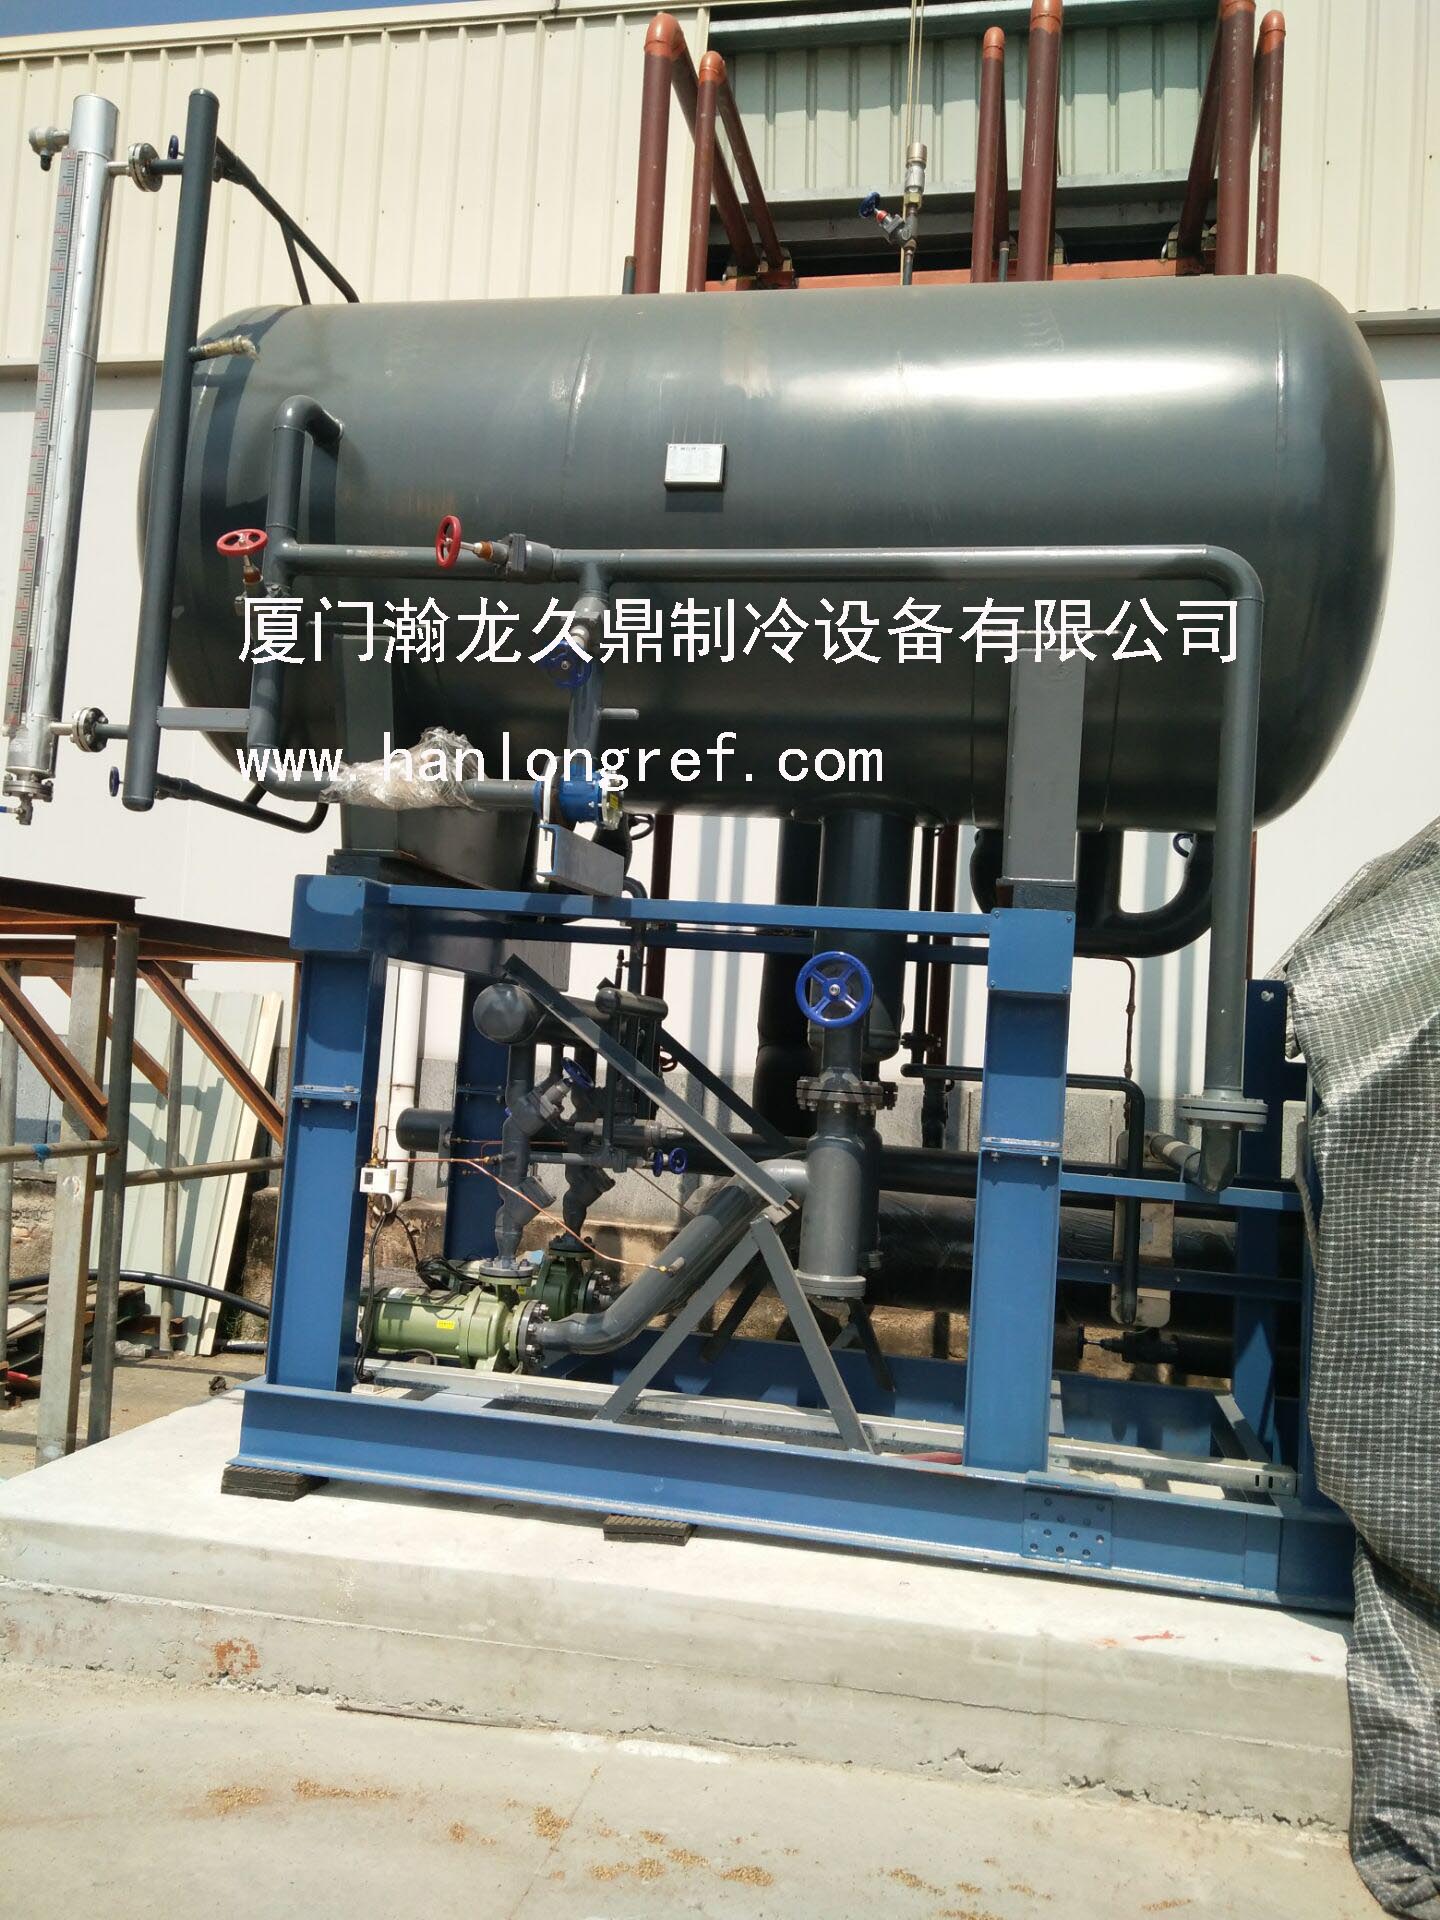 福州氟桶泵供液速冻设备 福州氟桶泵供液机组